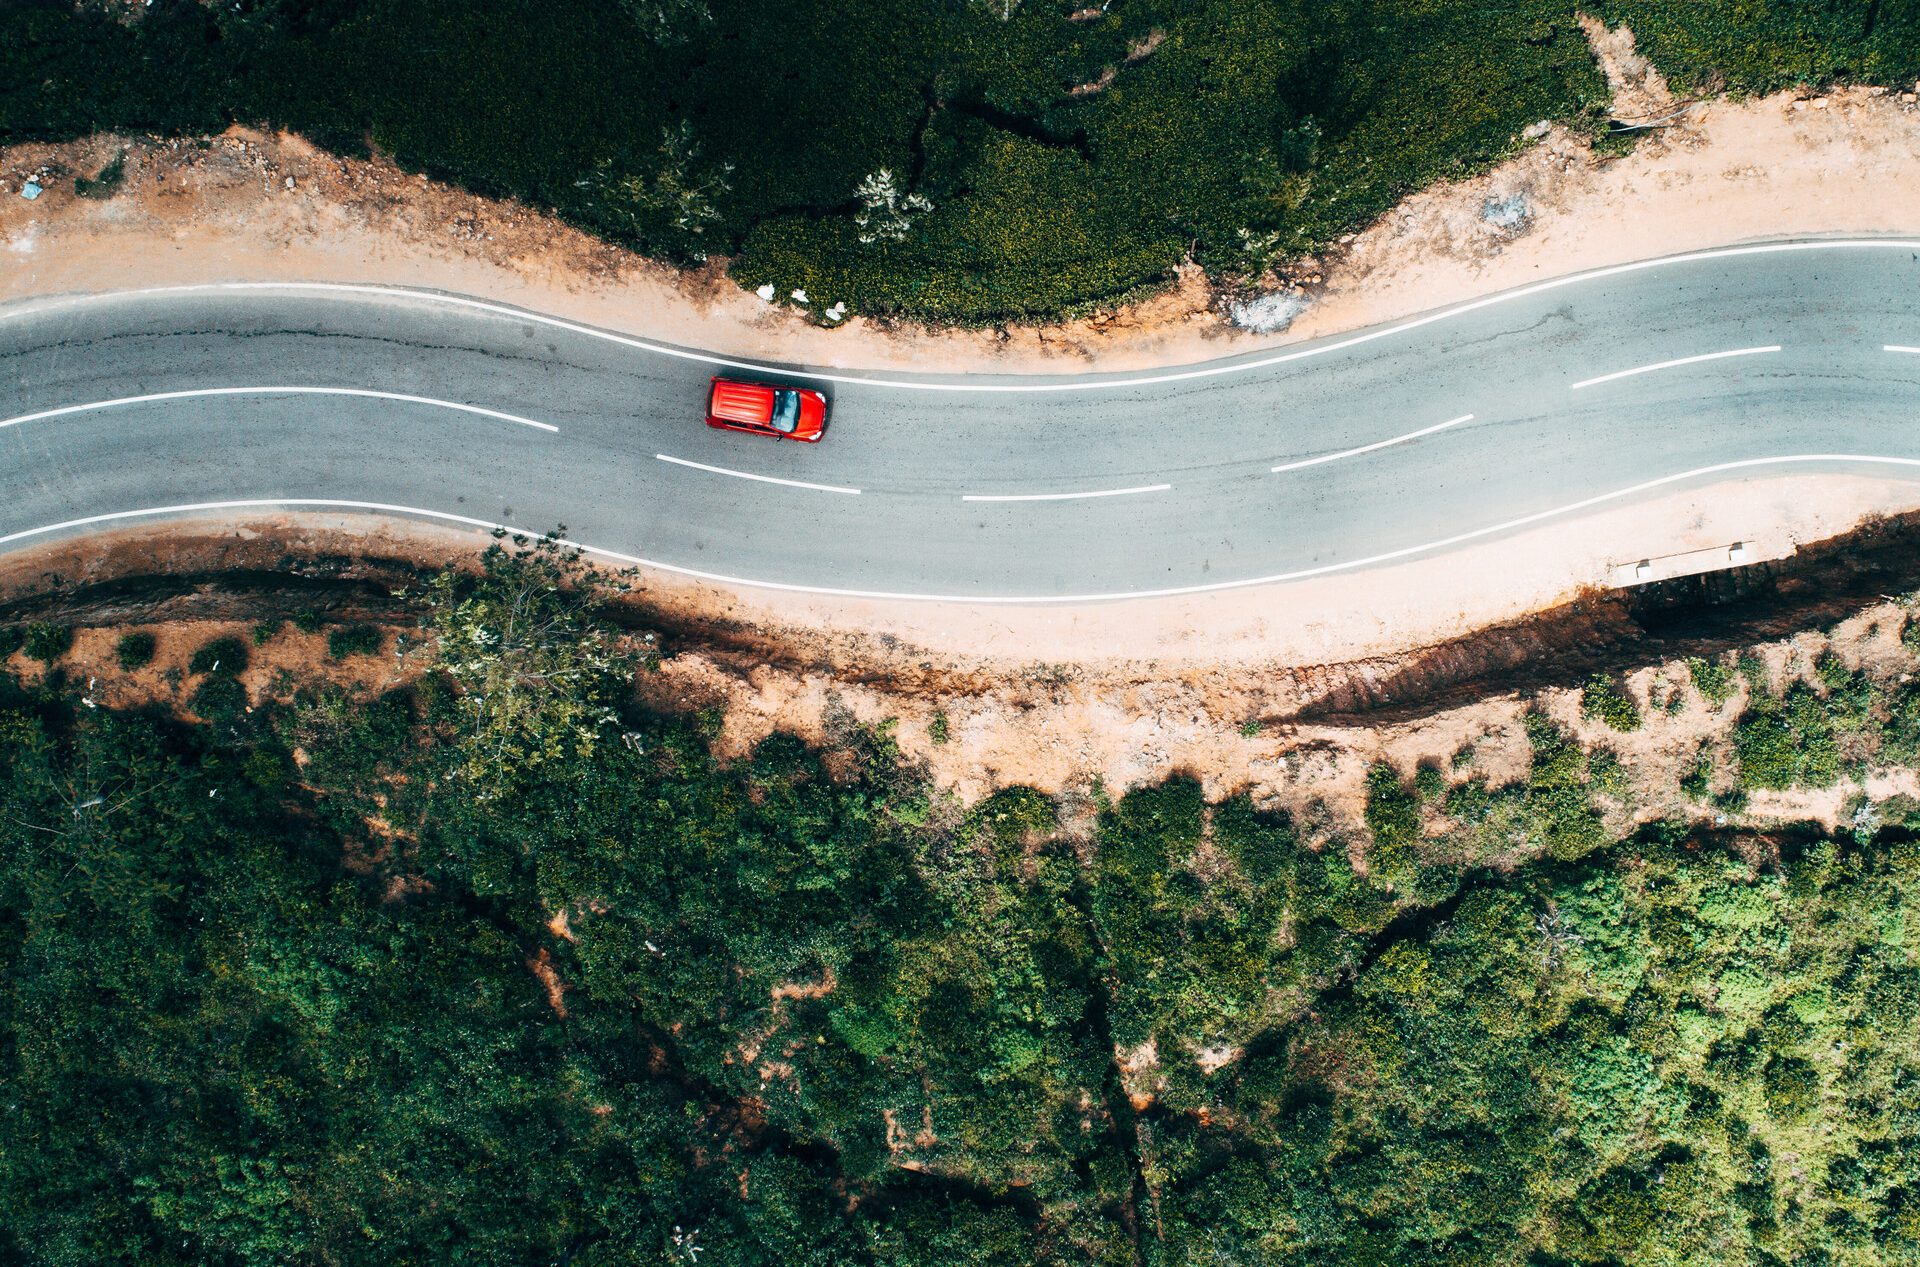 Luftfoto af bilen på en malerisk vej.